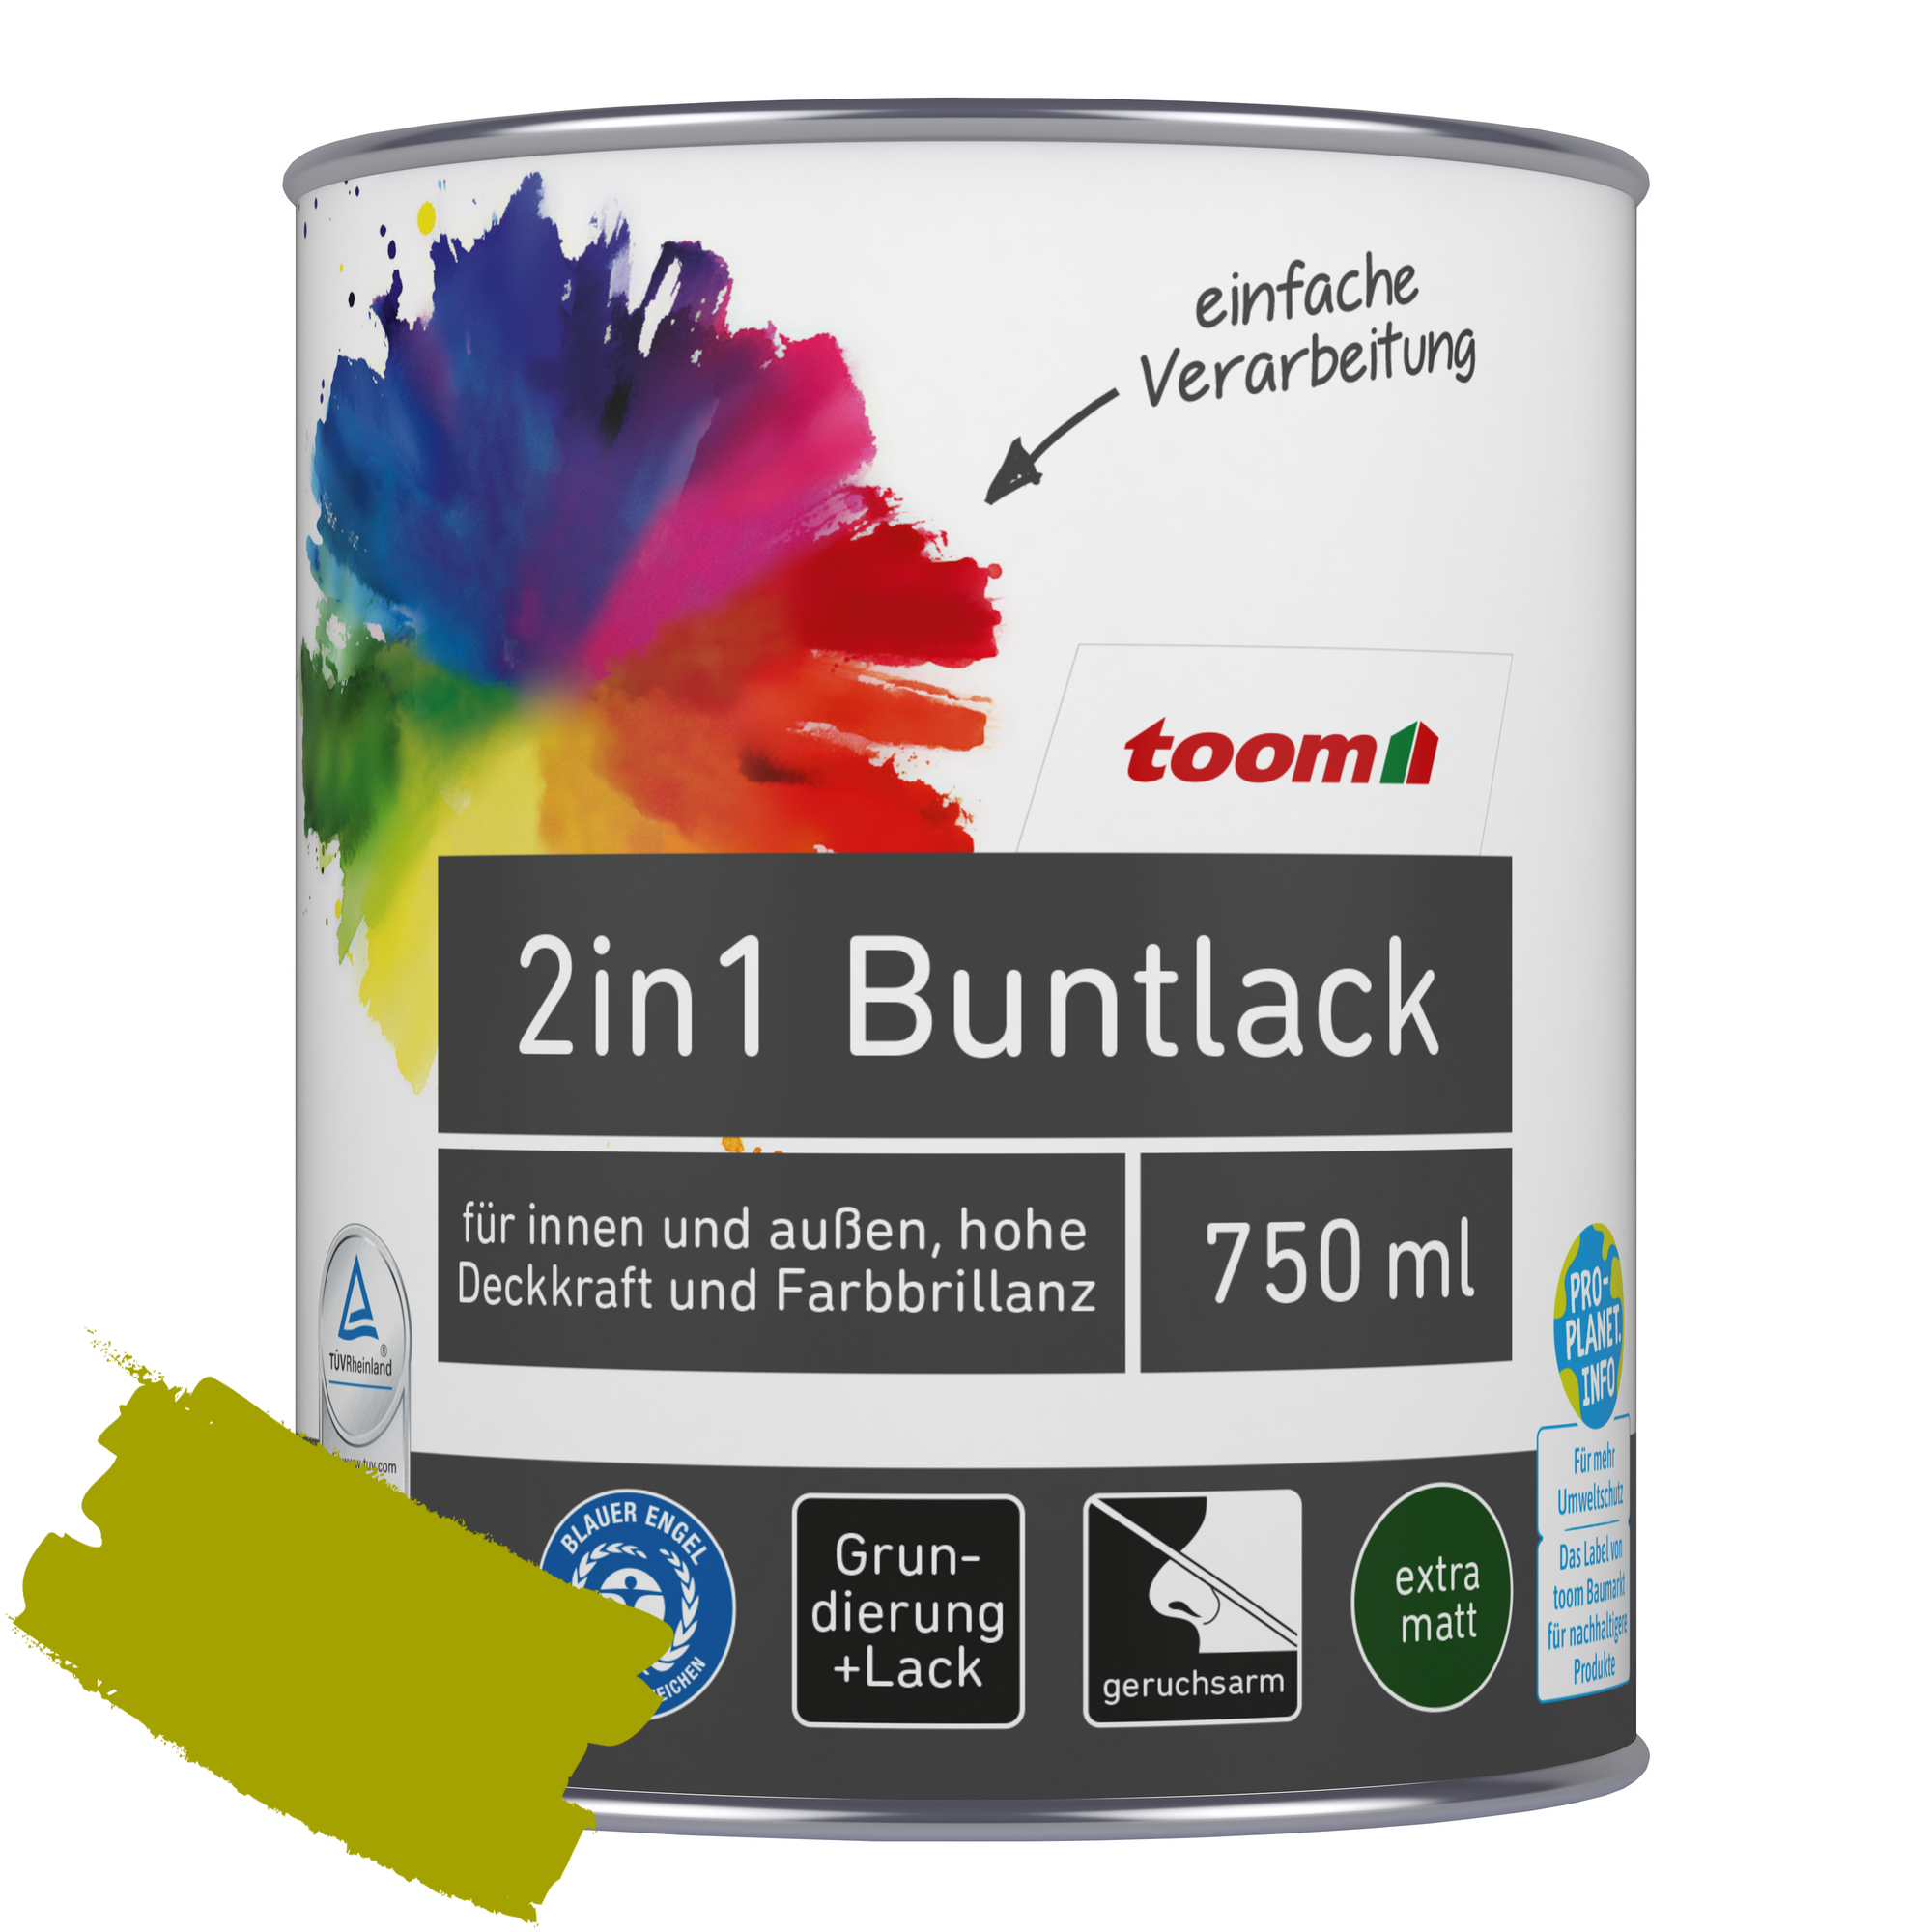 2in1 Buntlack 'Frühlingswiese' limettengrün matt 750 ml + product picture